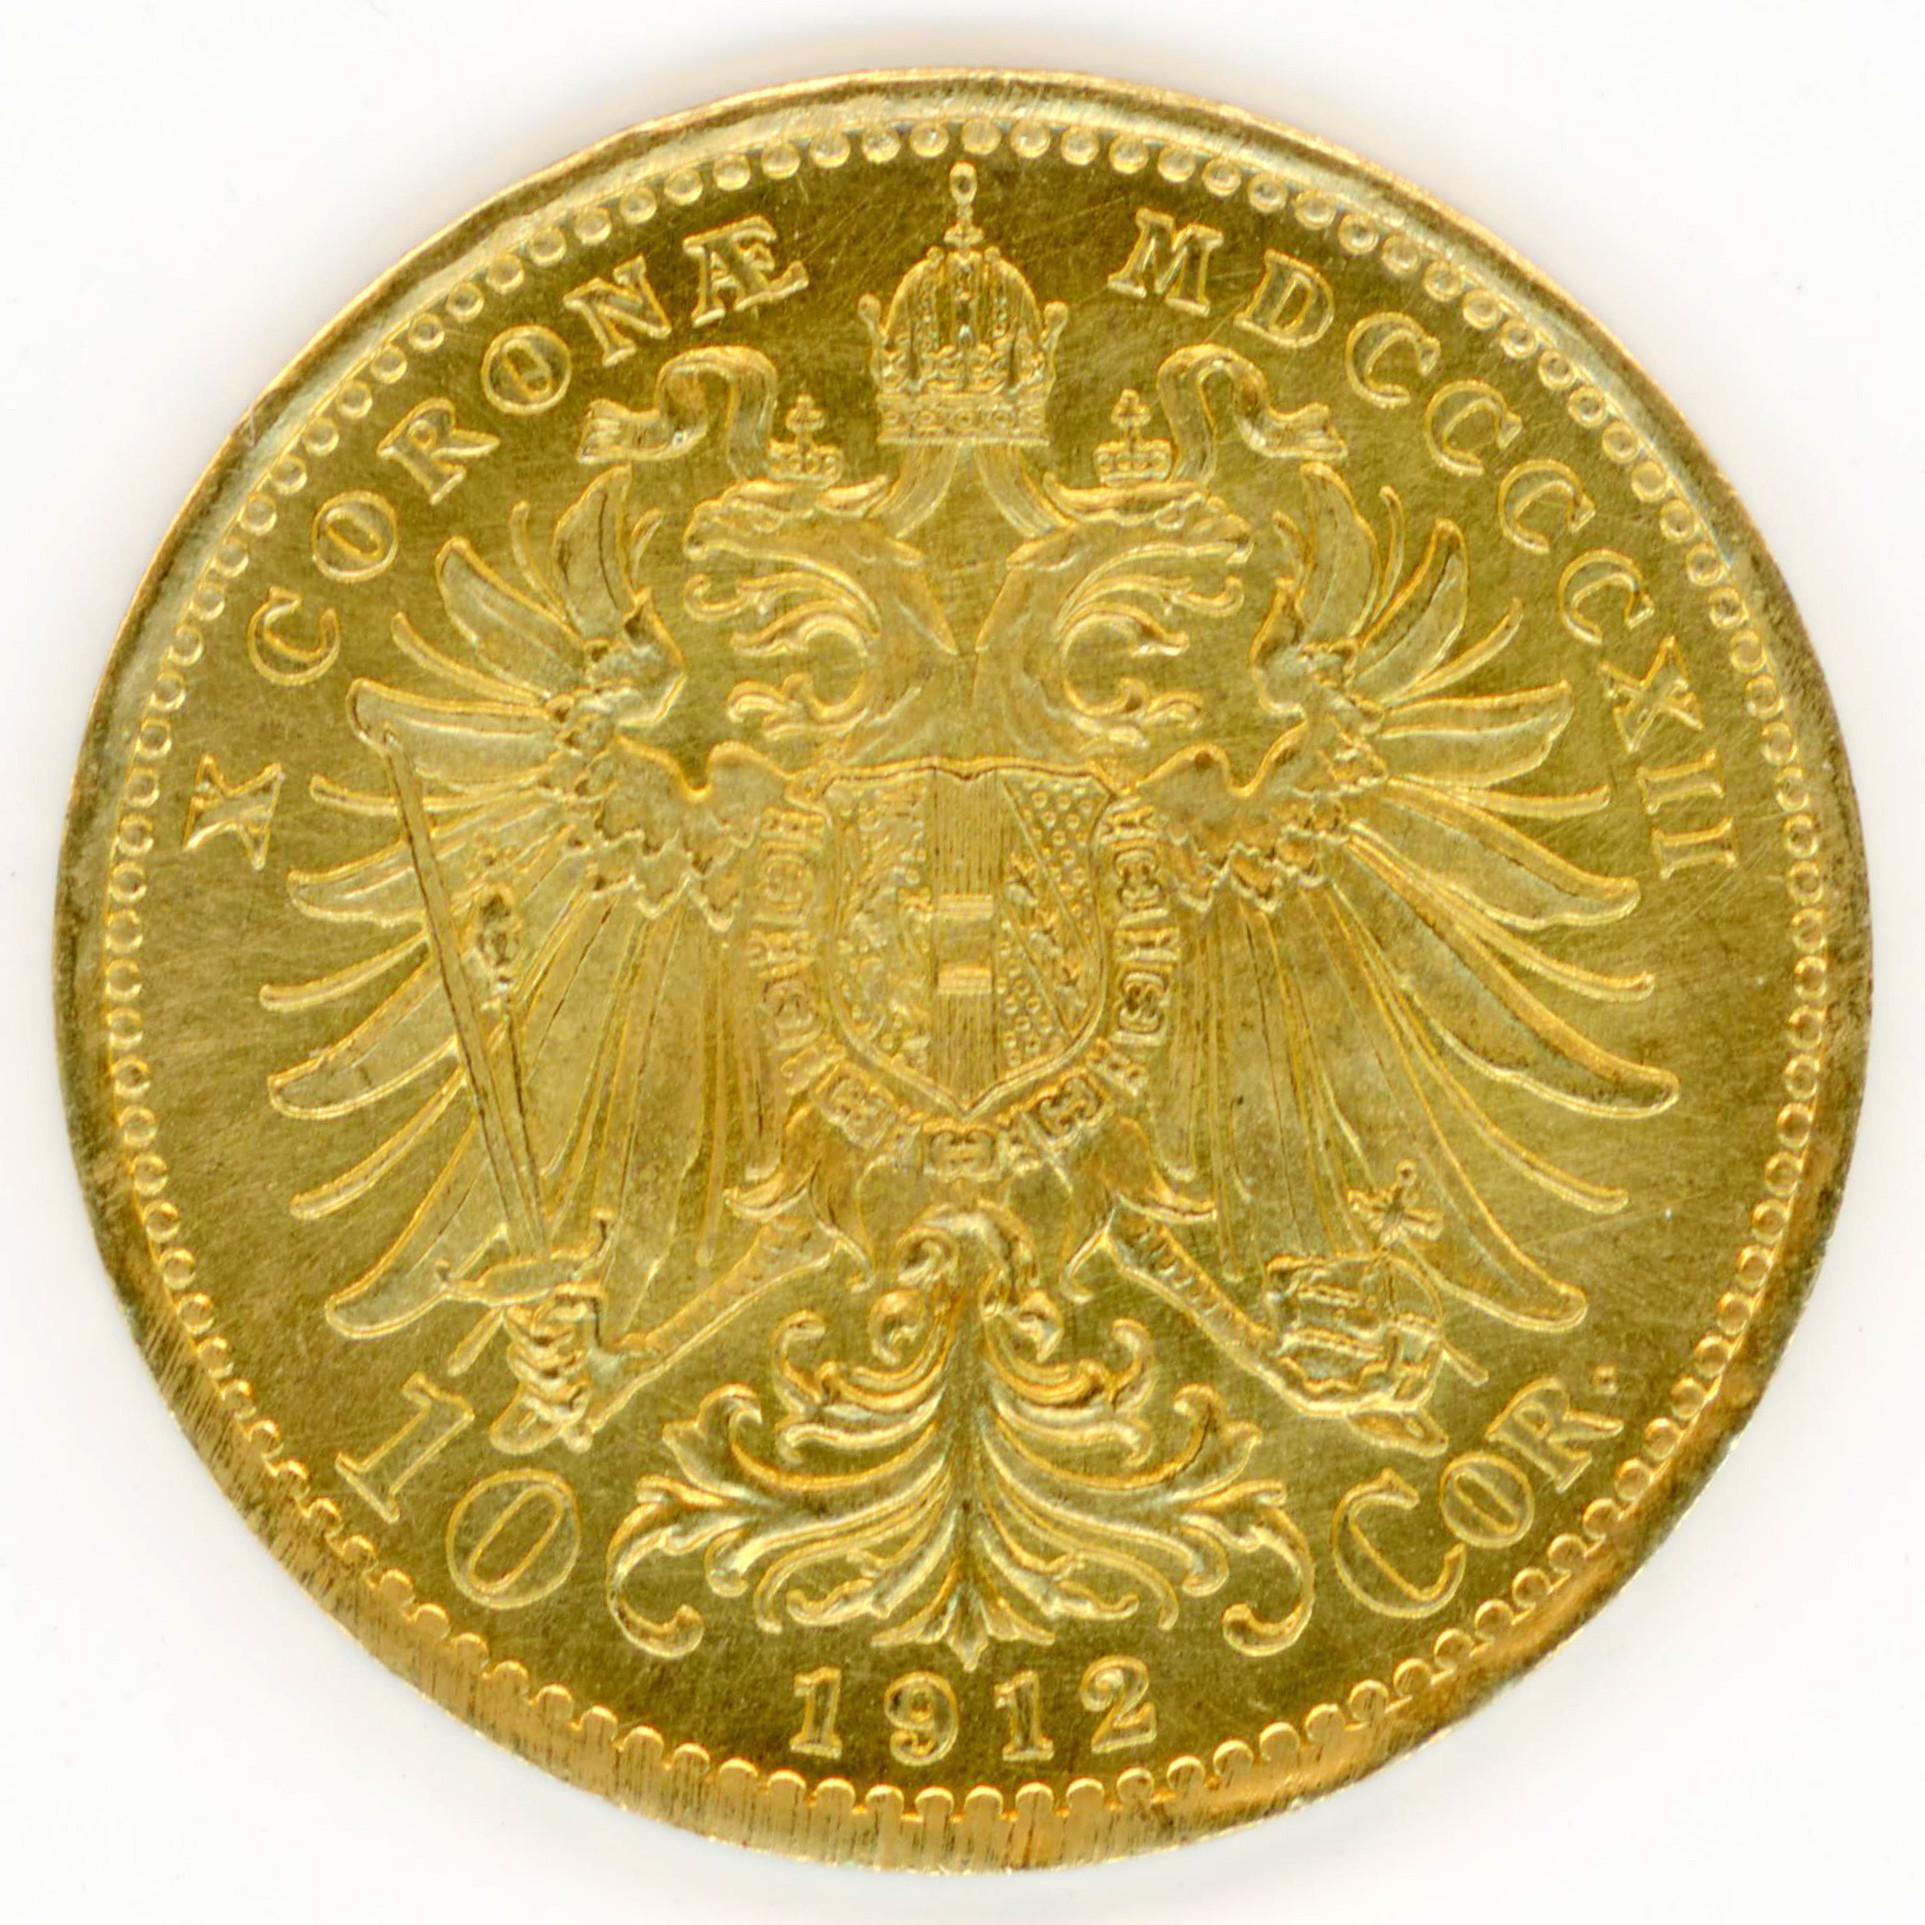 Autriche - 10 Couronnes - 1912 revers